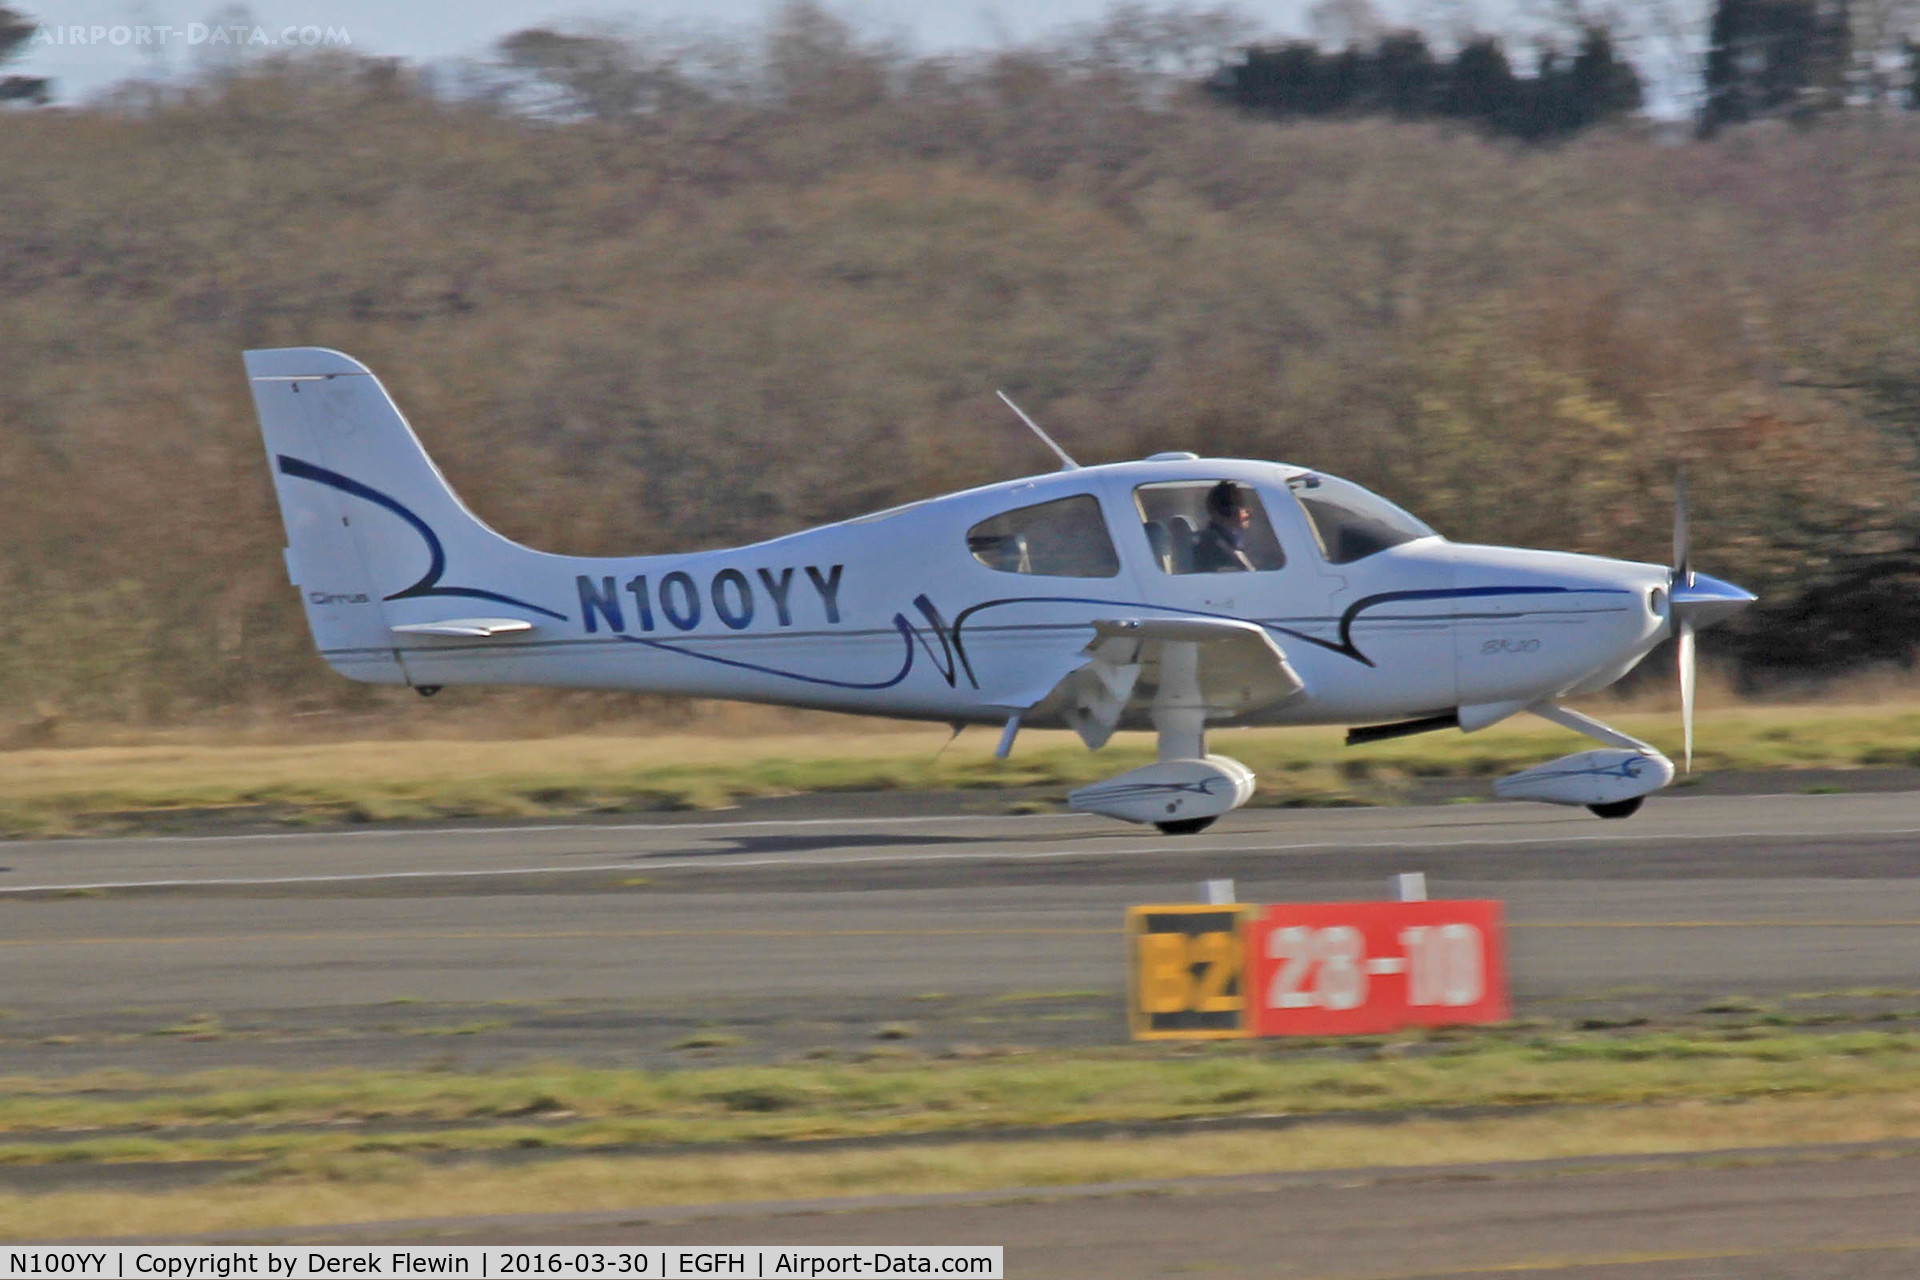 N100YY, 2002 Cirrus SR20 C/N 1183, SR20, Deenethorpe based, previously N292CD, seen departing runway 28 en-route RTB.